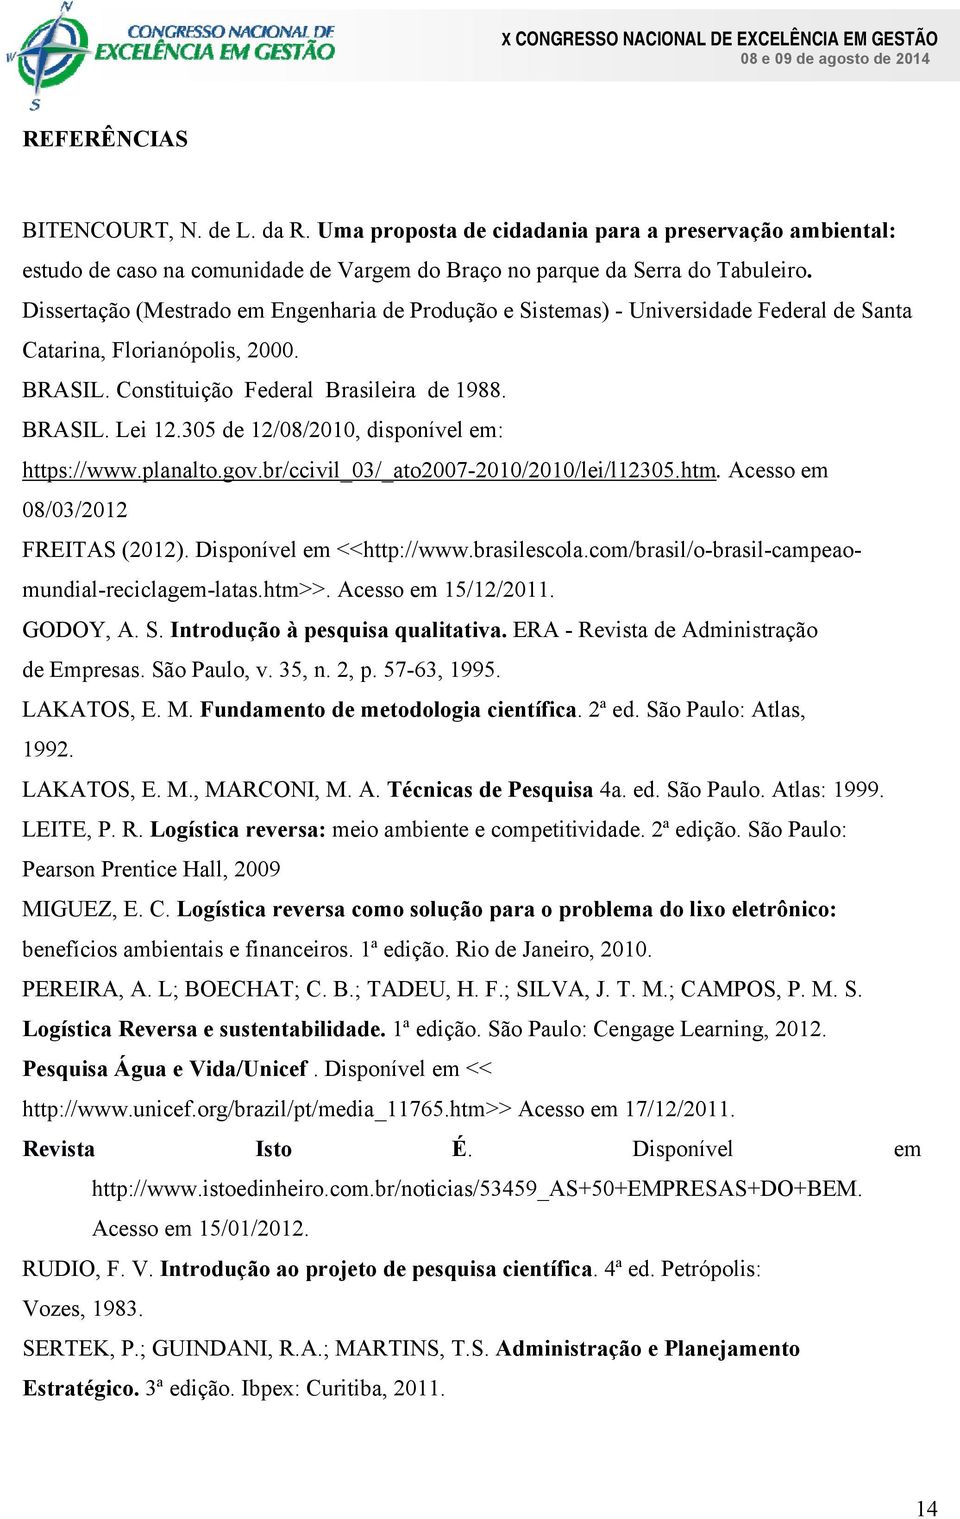 305 de 12/08/2010, disponível em: https://www.planalto.gov.br/ccivil_03/_ato2007-2010/2010/lei/l12305.htm. Acesso em 08/03/2012 FREITAS (2012). Disponível em <<http://www.brasilescola.